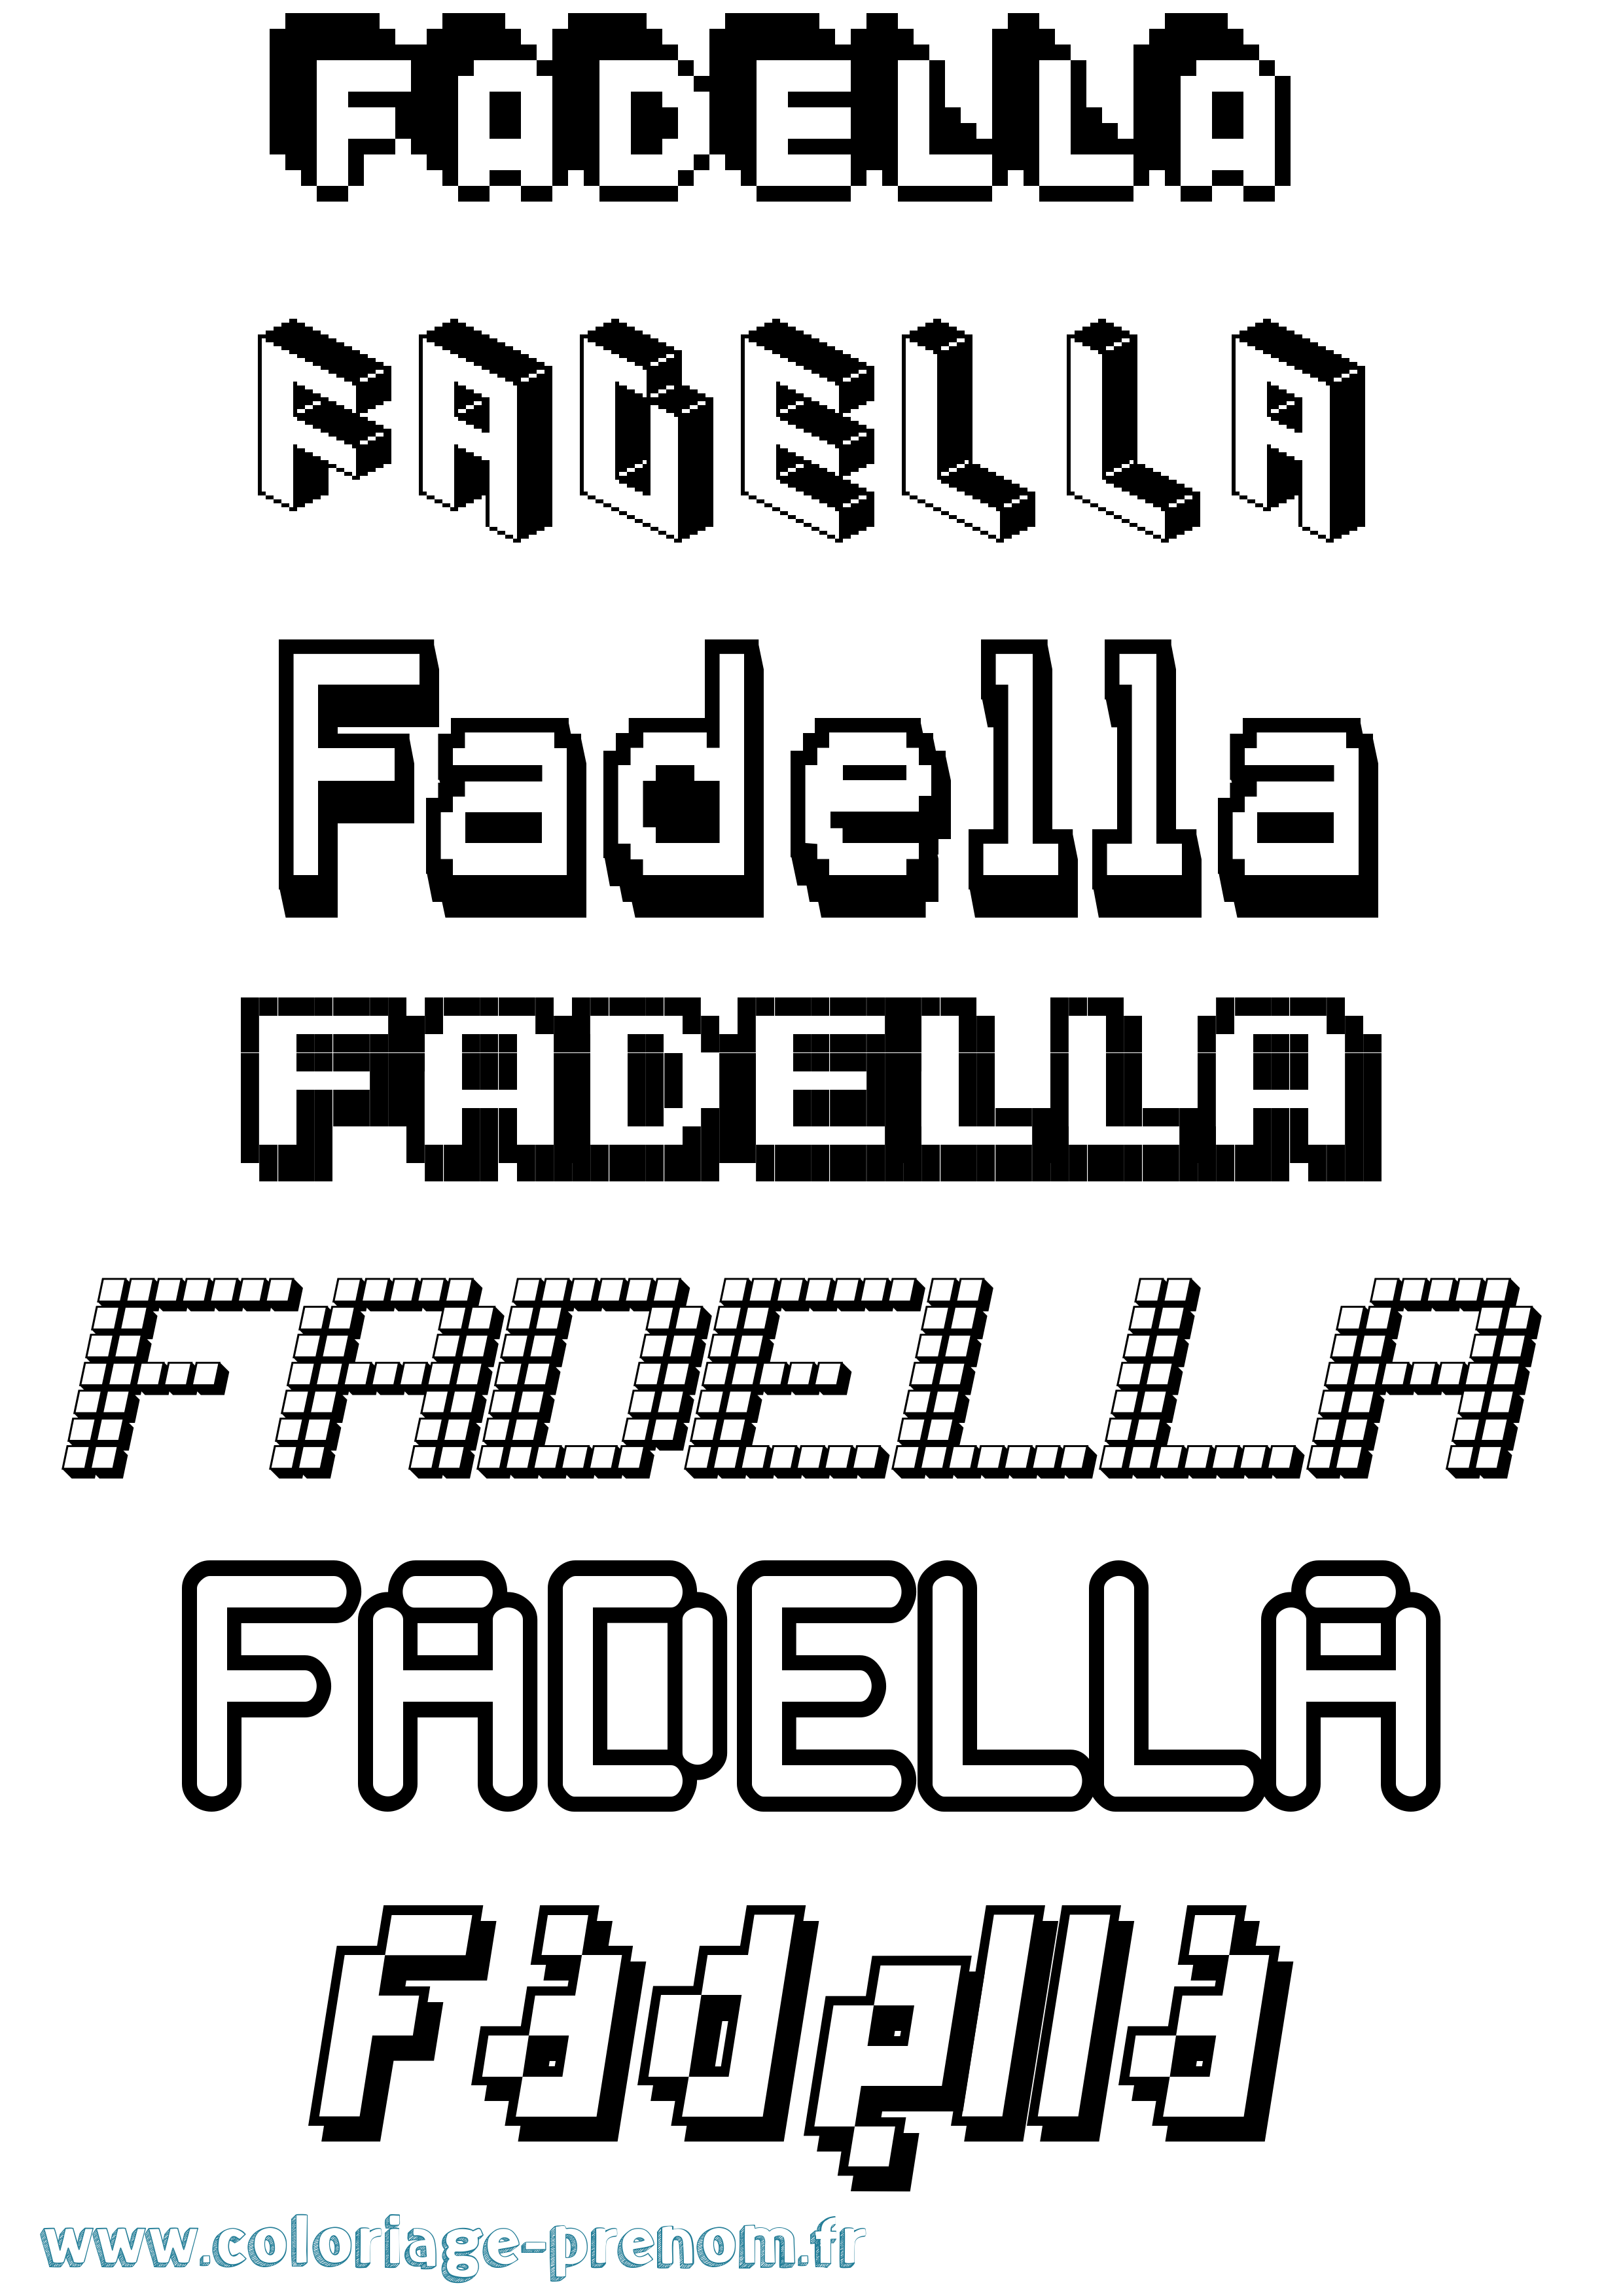 Coloriage prénom Fadella Pixel